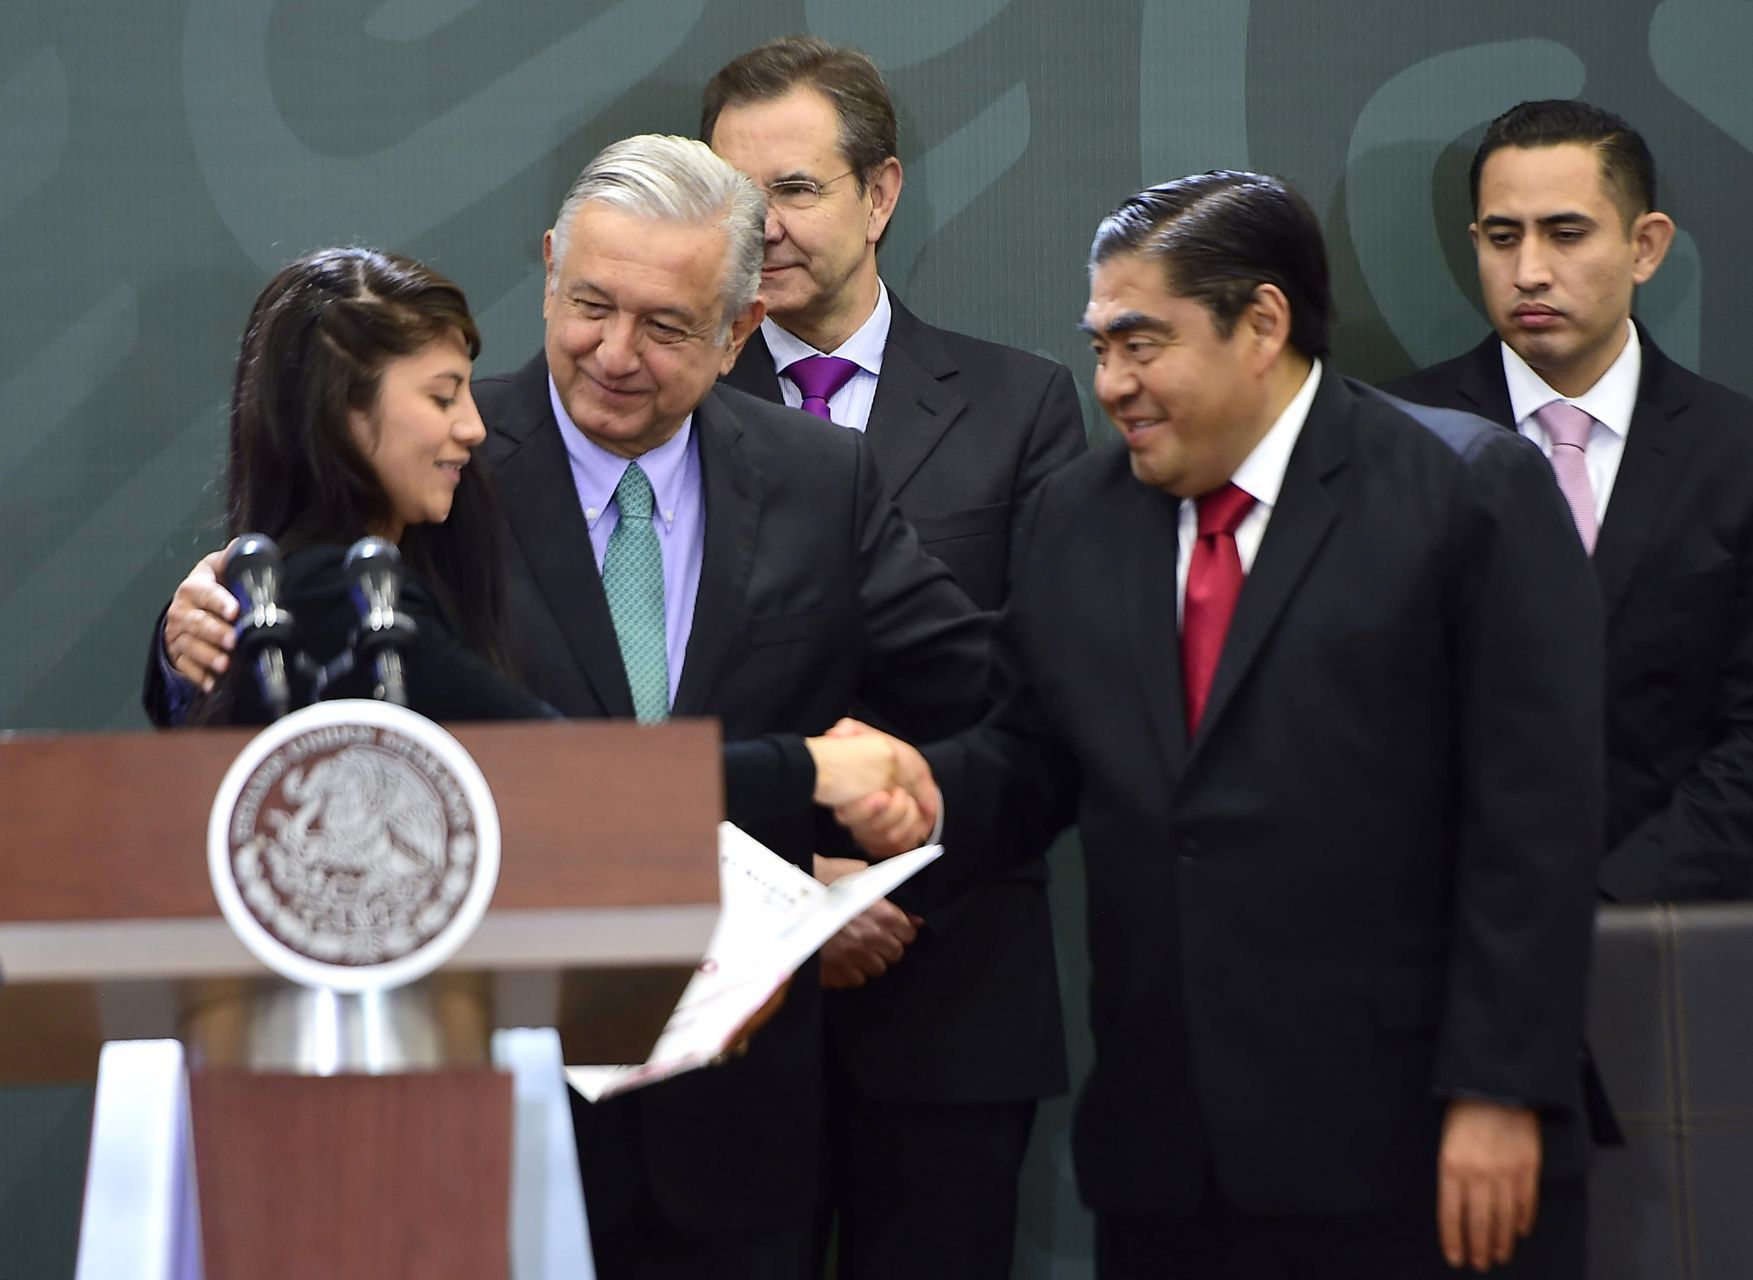 Polémica por nueva ley en Puebla que permite al gobierno de Barbosa ‘tomar control’ de escuelas privadas